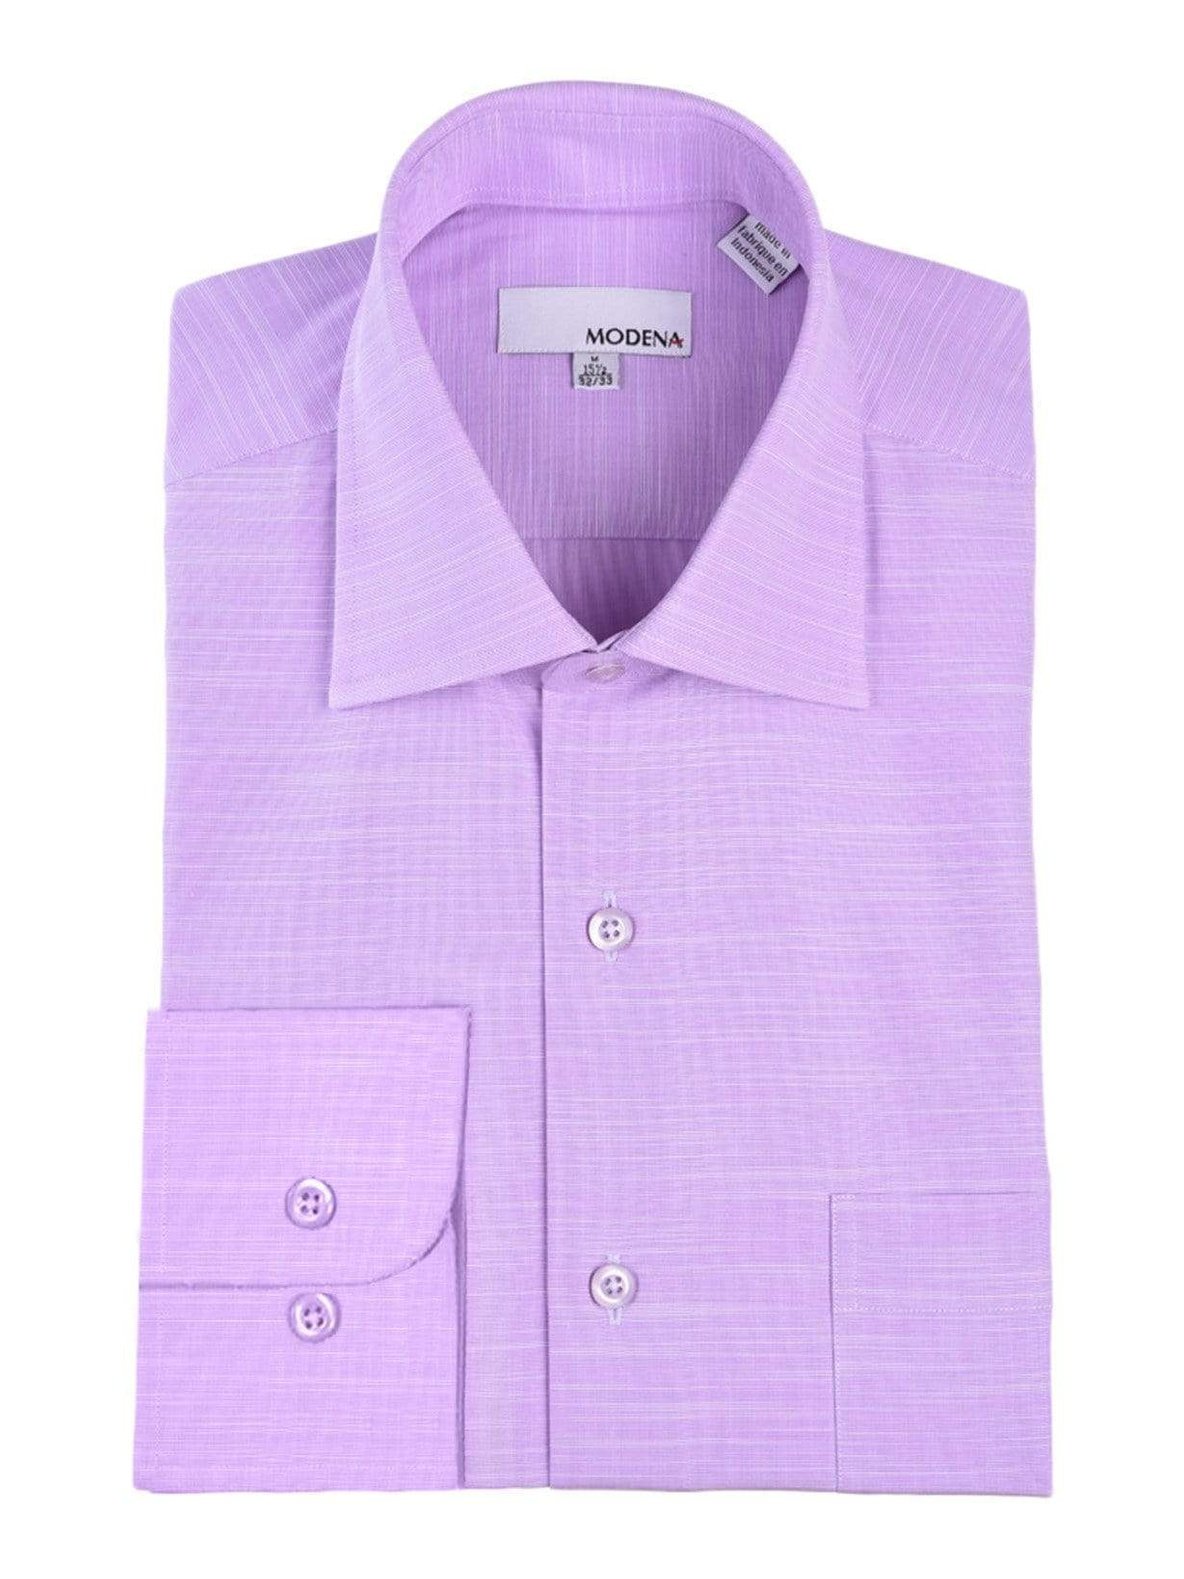 Modena Sale Shirts 15 32/33 Regular Fit Lavander Textured Spread Collar Cotton Blend Dress Shirt